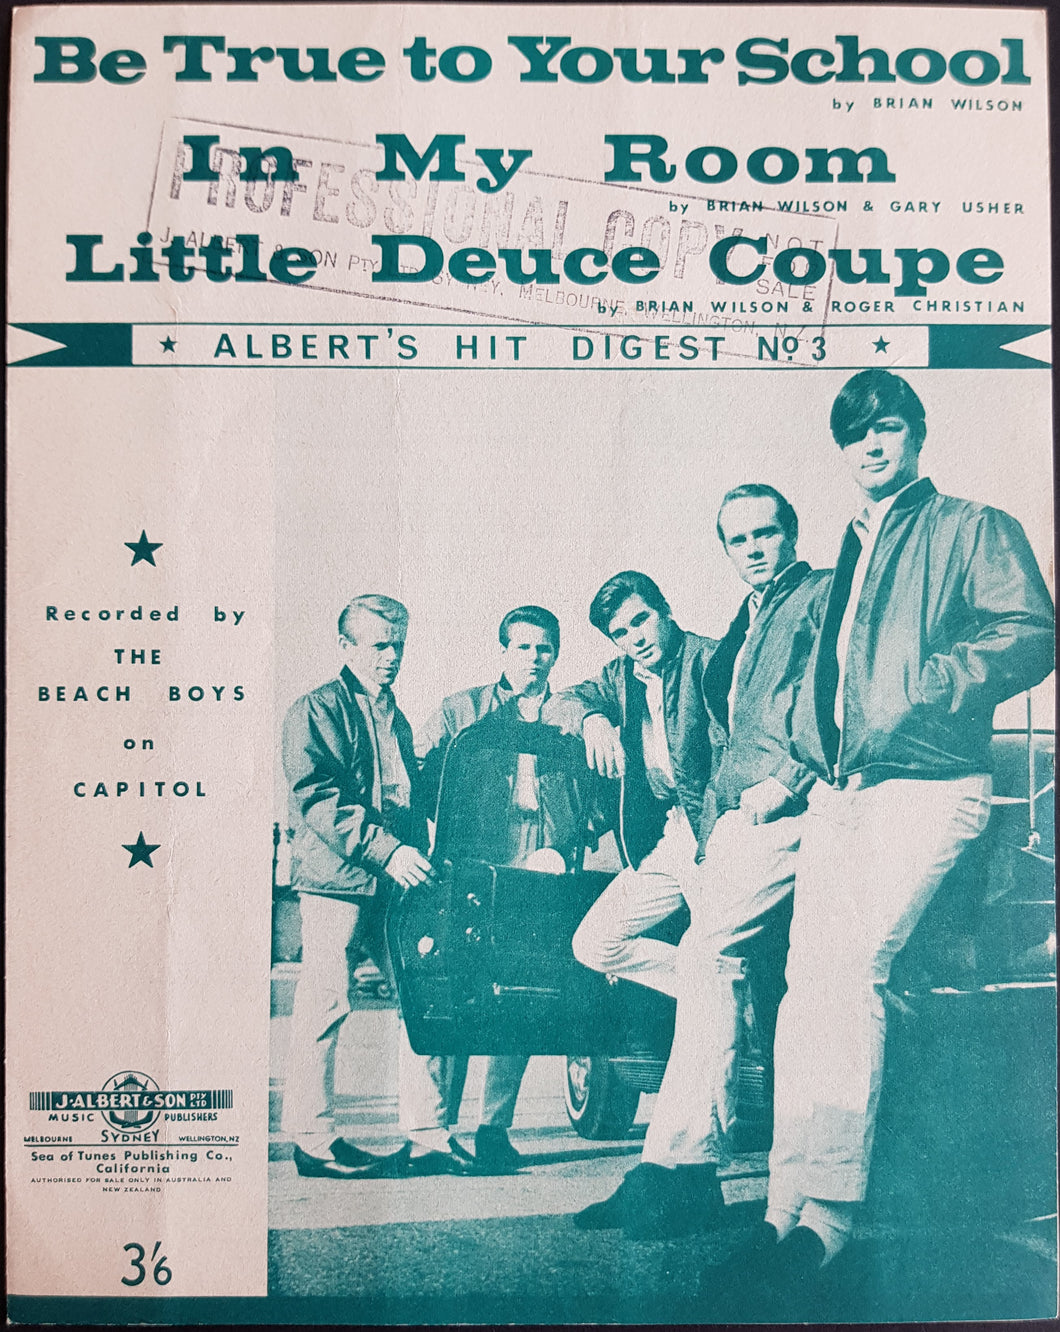 Beach Boys - Albert's Hit Digest No.3